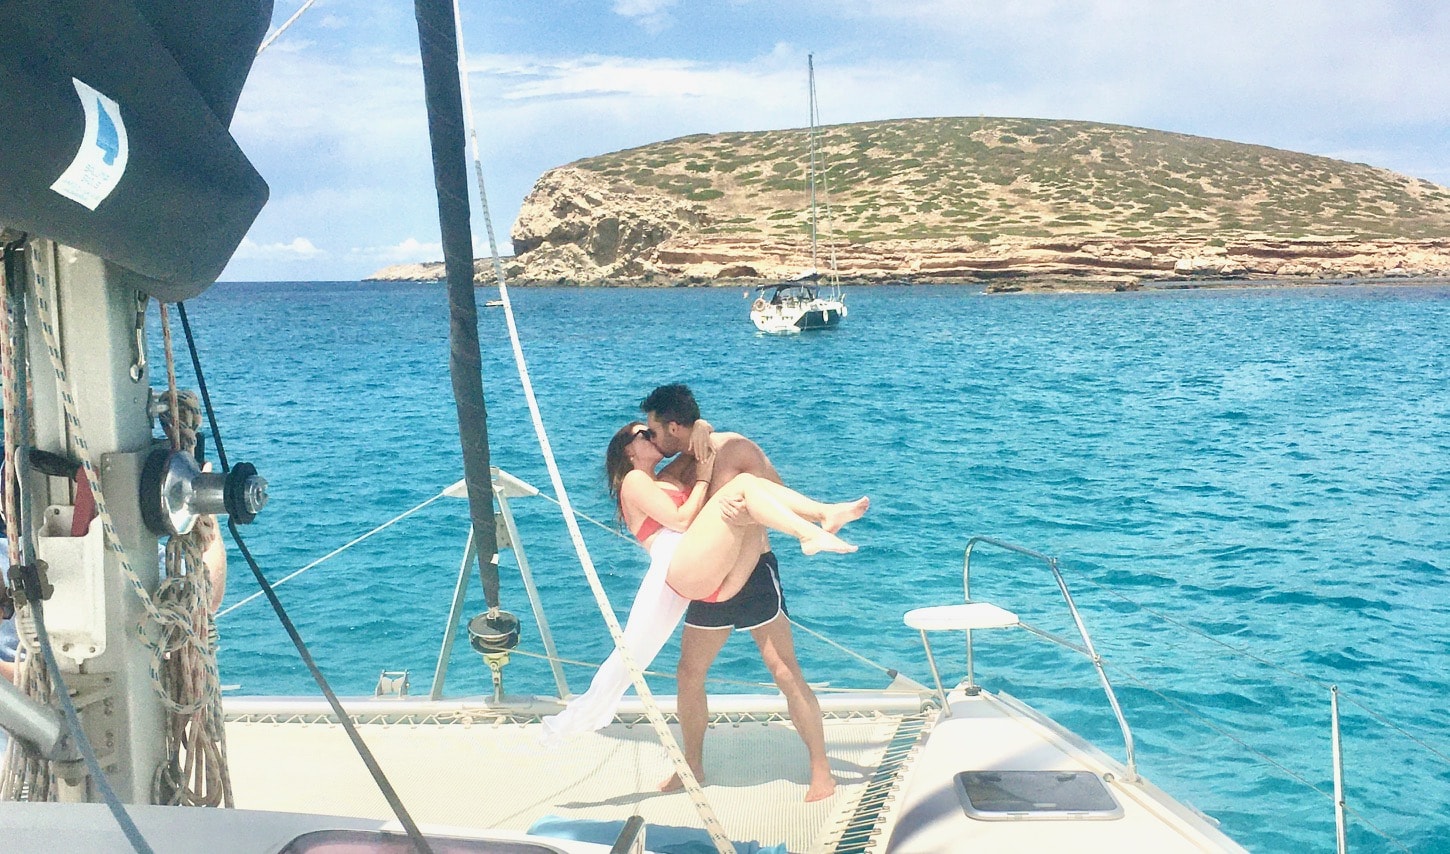 Alquiler catamarán Ibiza - pareja de novios en catamarán en Ibiza